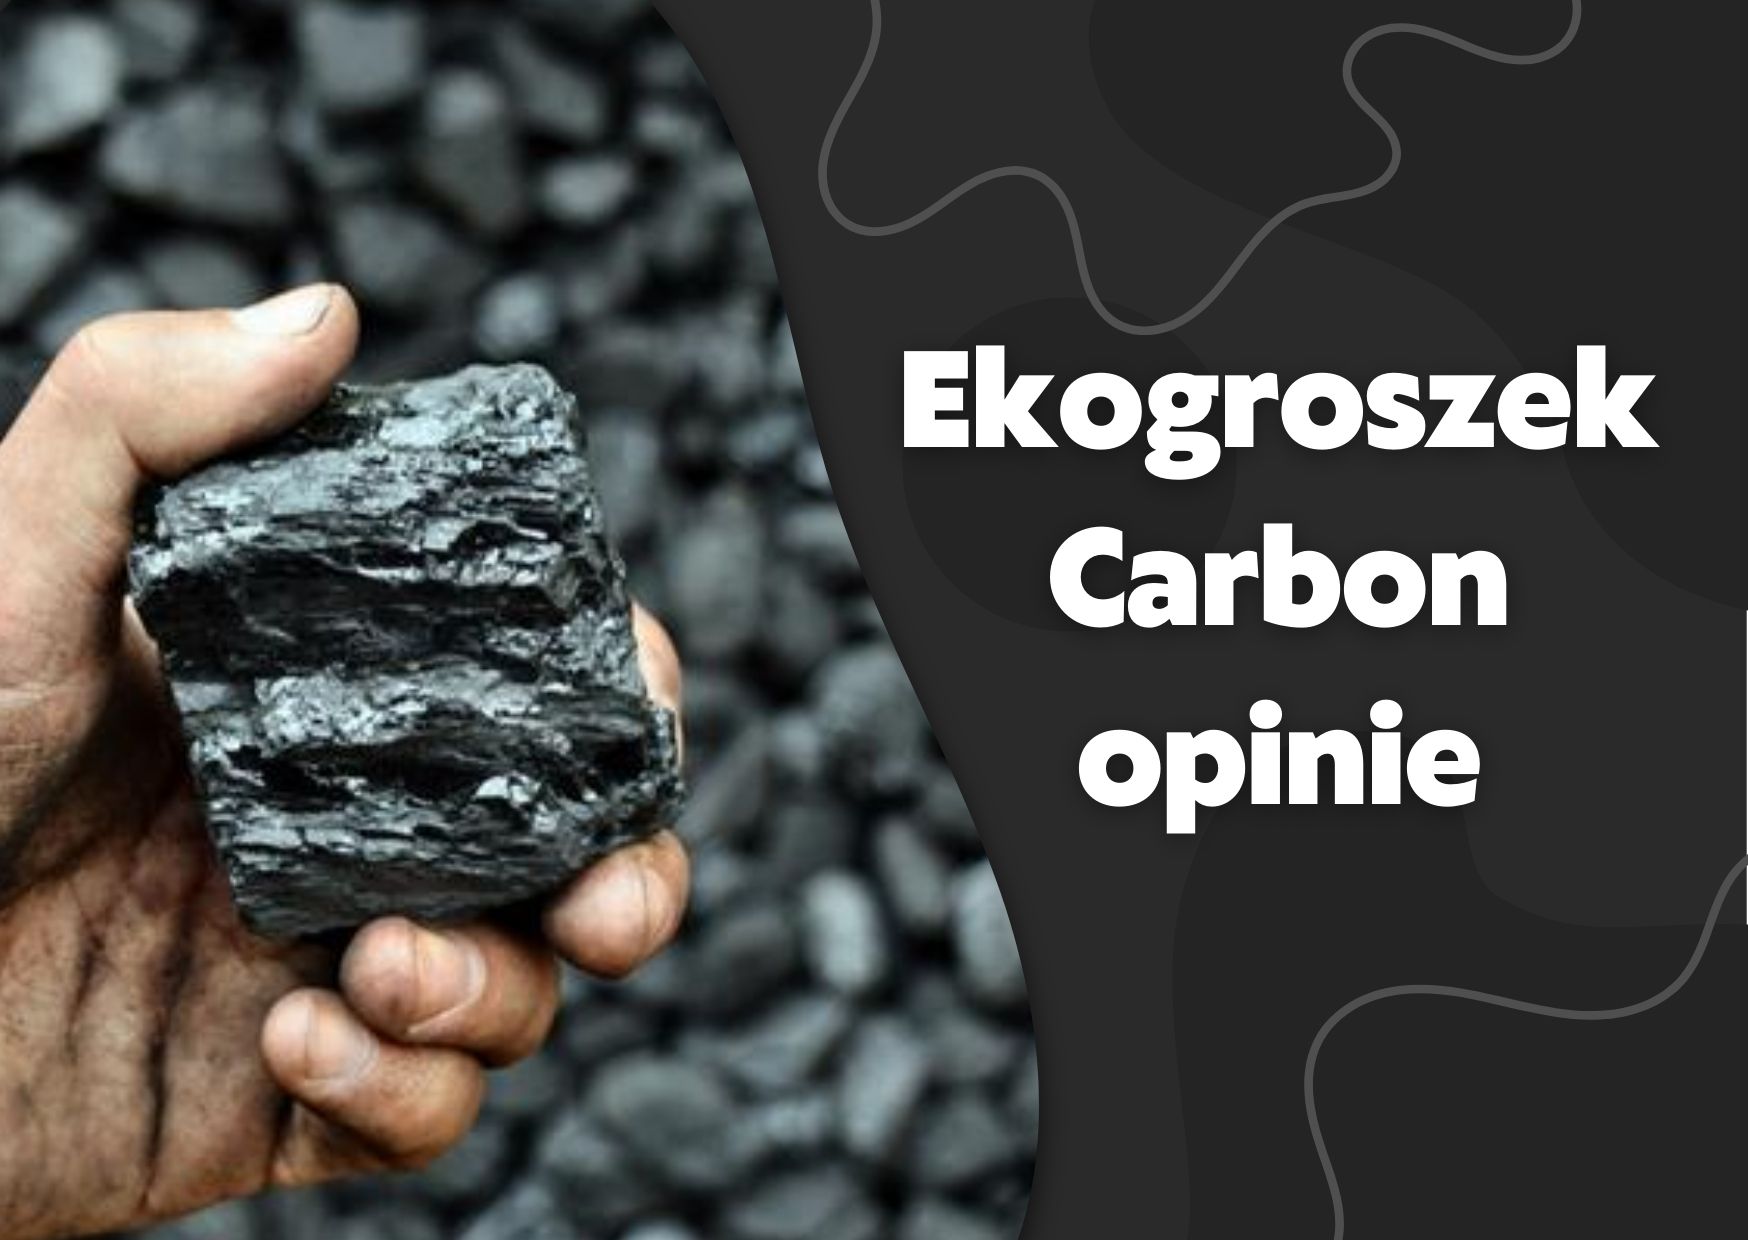 Ekogroszek Carbon - testy opinie klientów na forum, producent, jaka cena